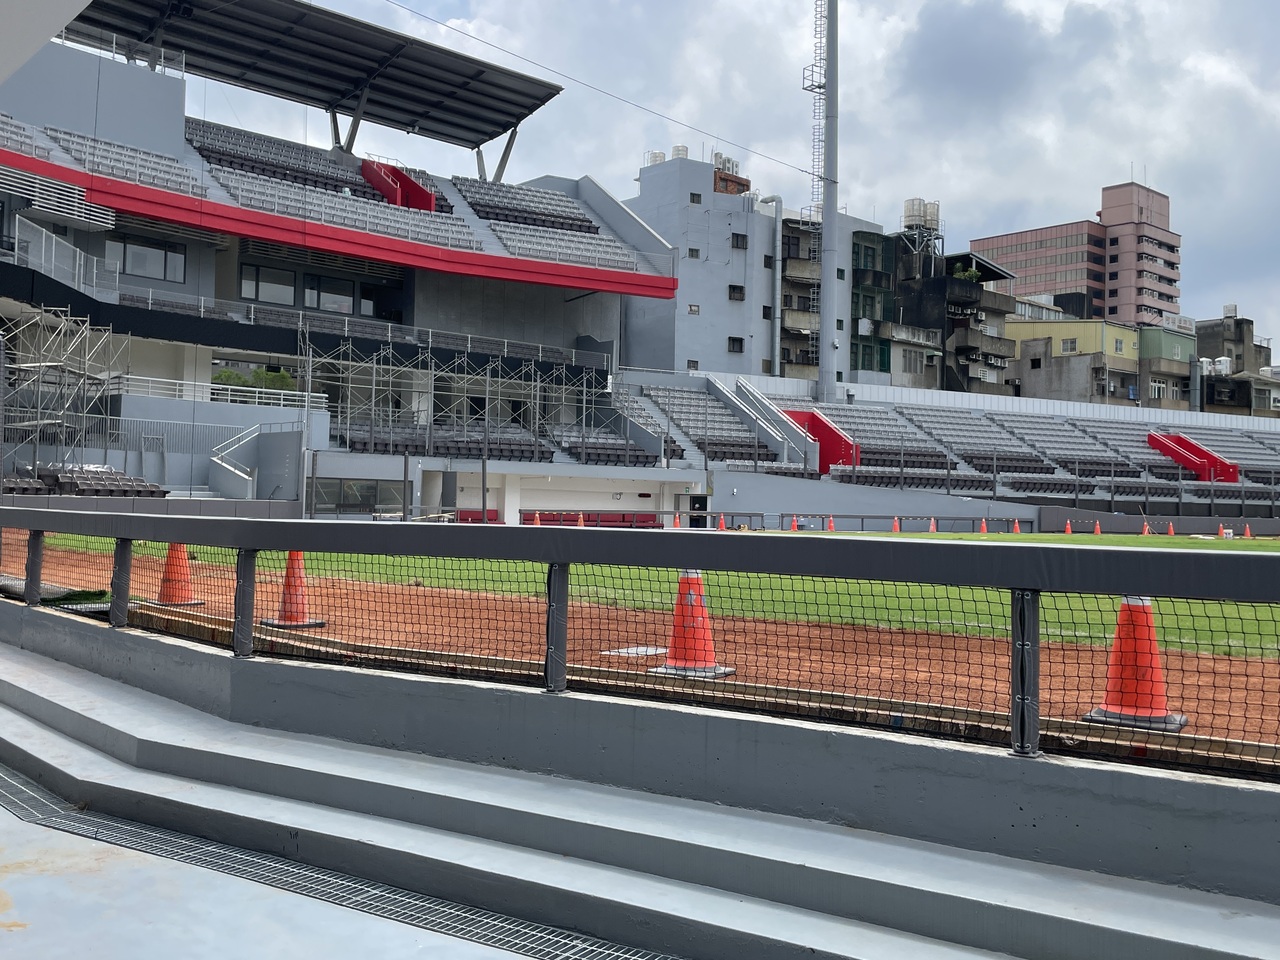 [新聞] 新竹棒球場「排水溝蓋在場內」 立委會勘要求外推